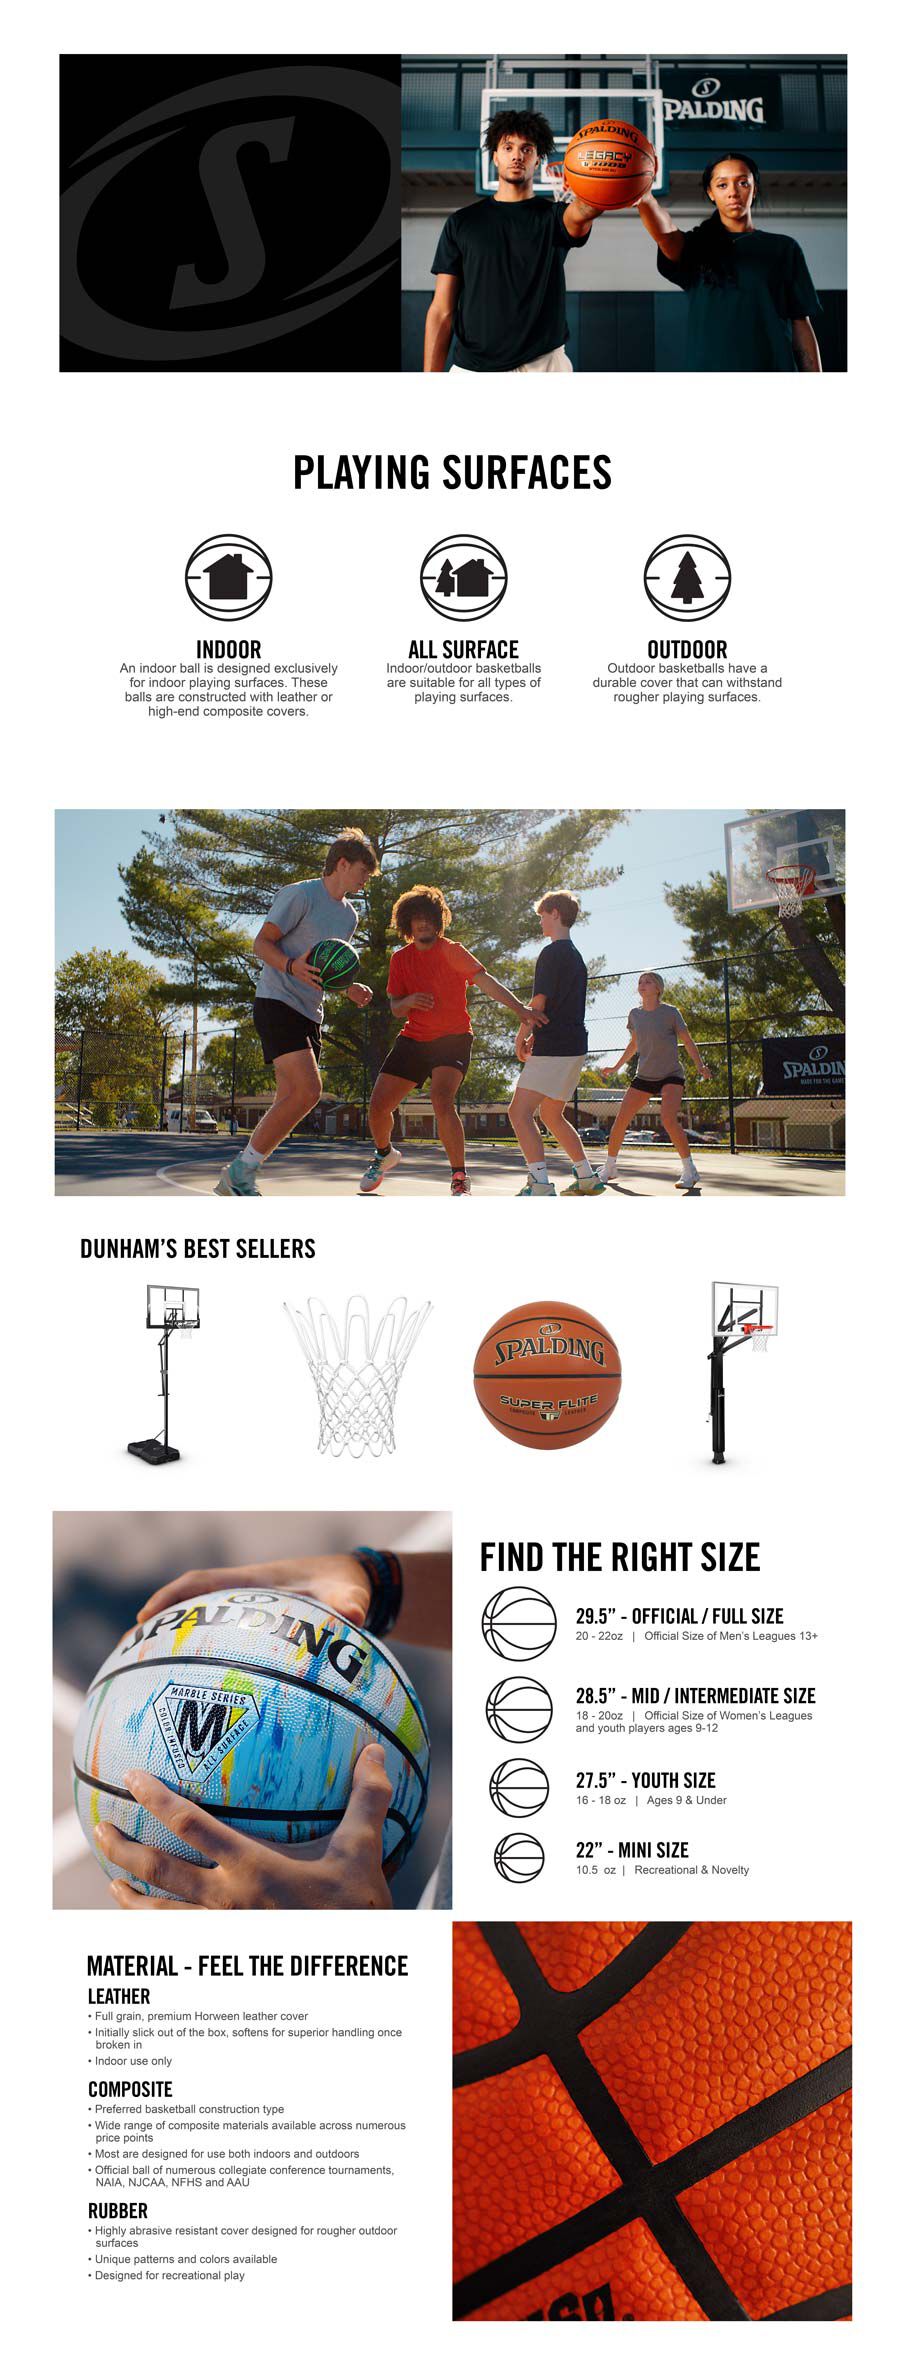 Spalding Basketball Sizes